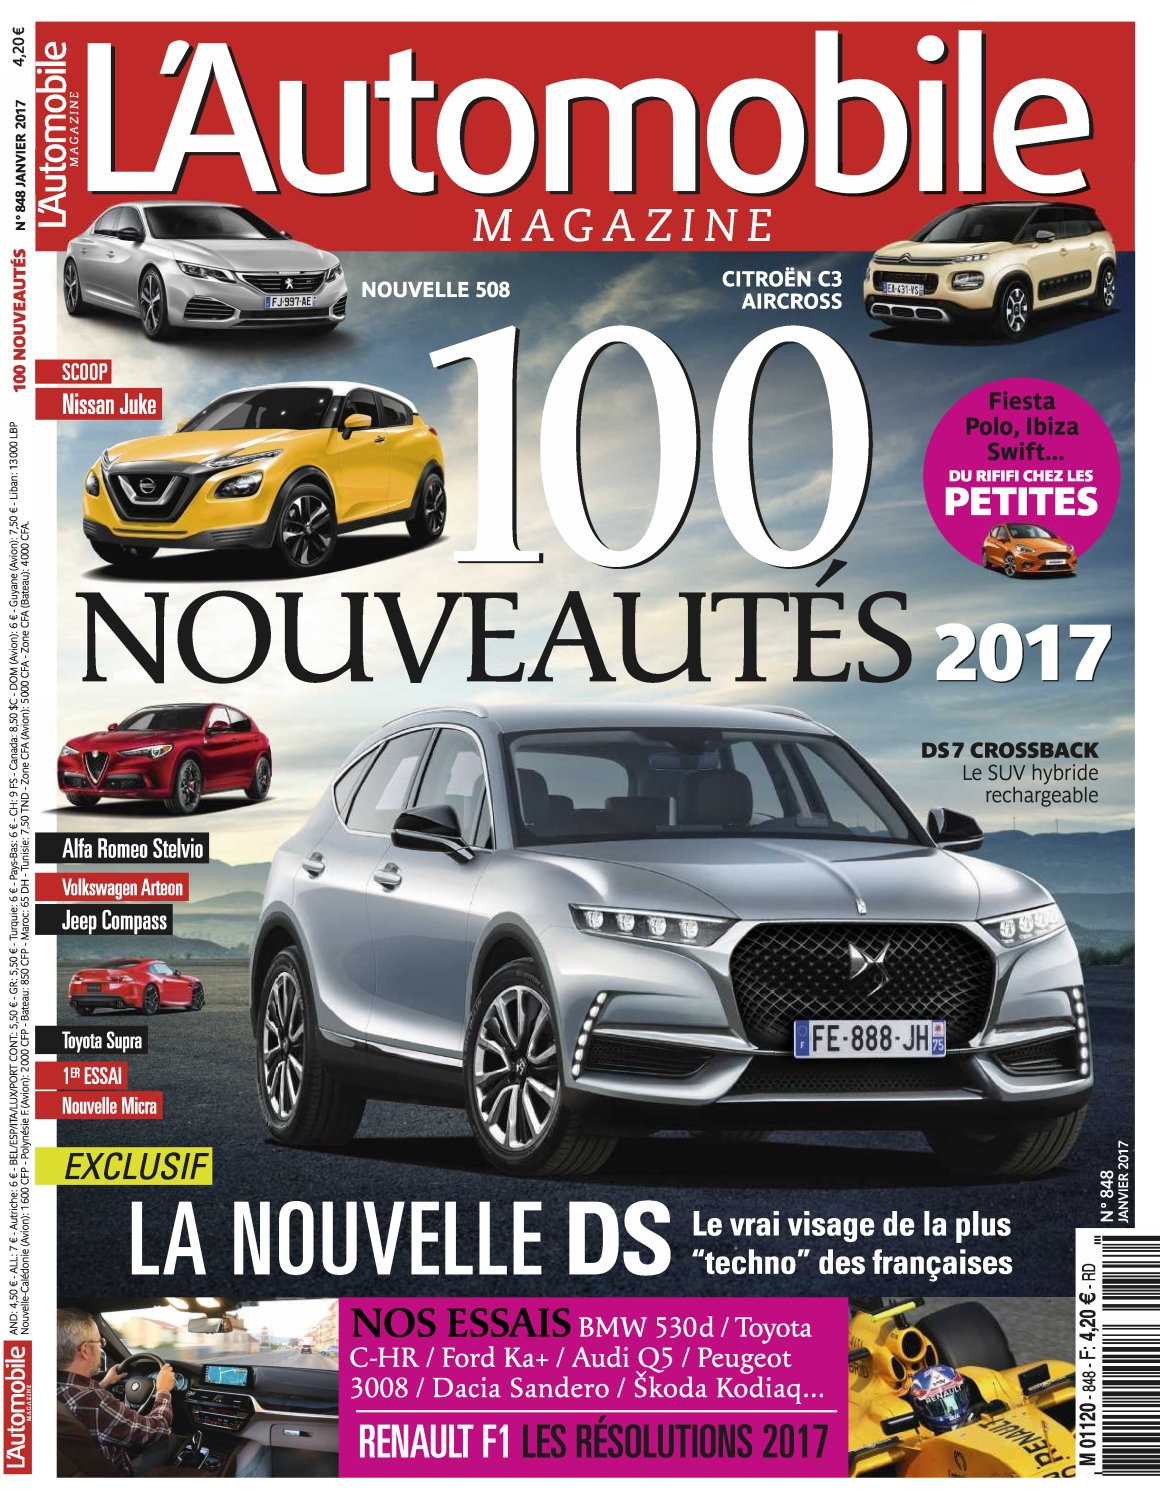 L'Automobile Magazine N°848 - Janvier 2017 